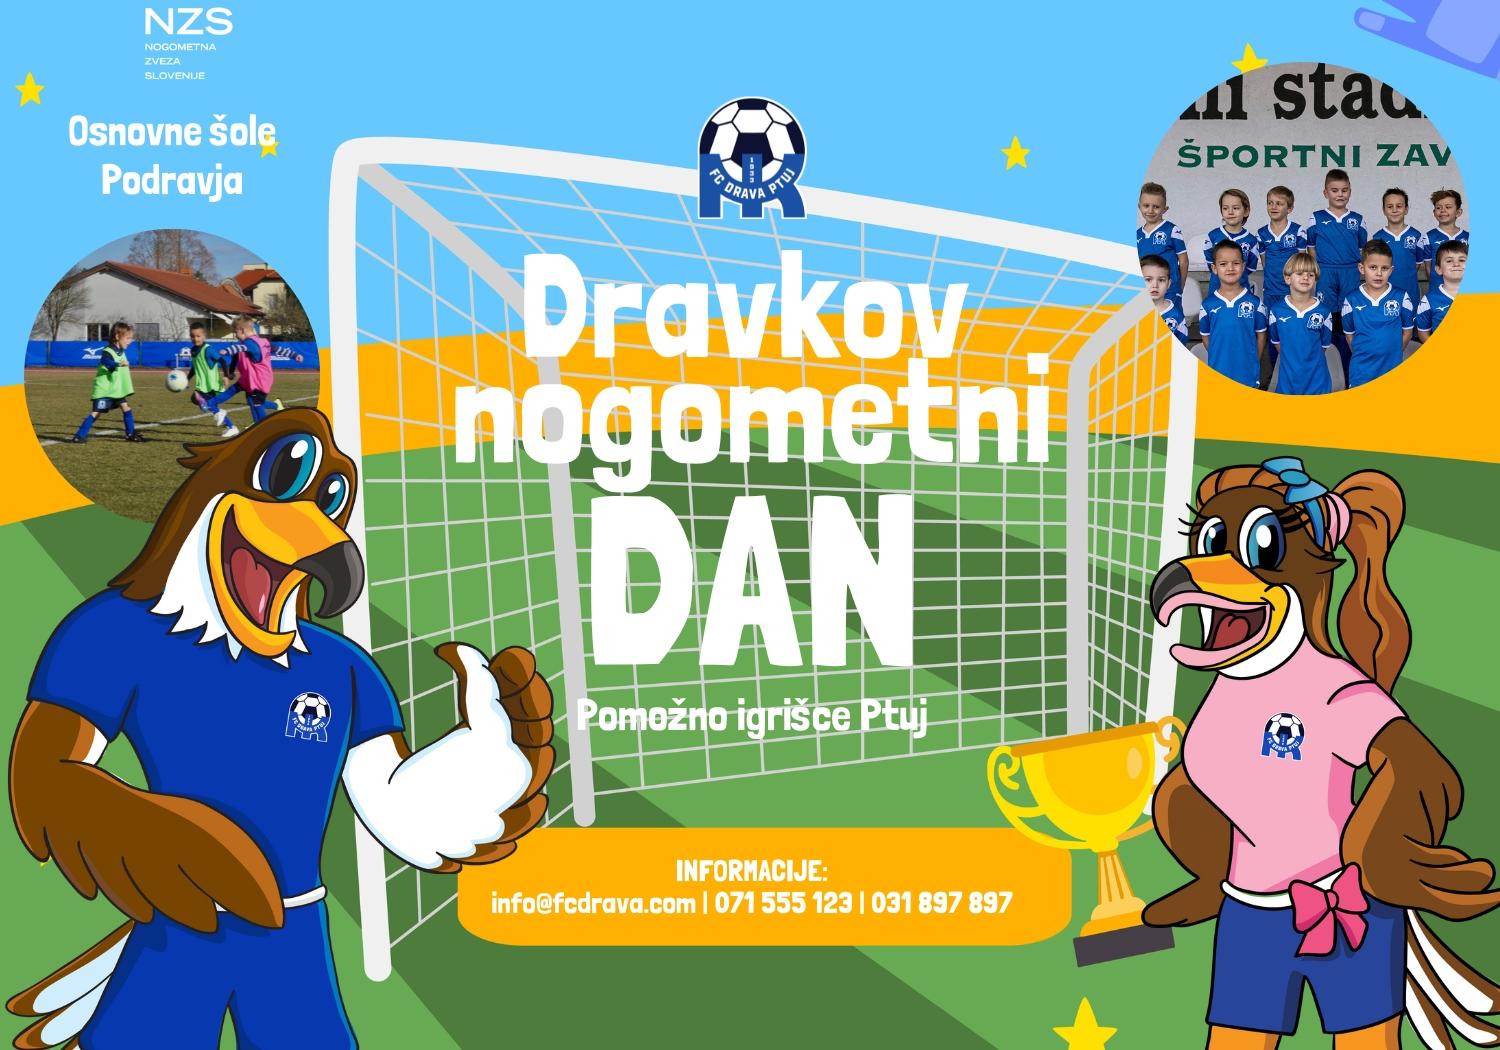 Dravkov Nogometni Dan - FB COVER (820 × 312 px)